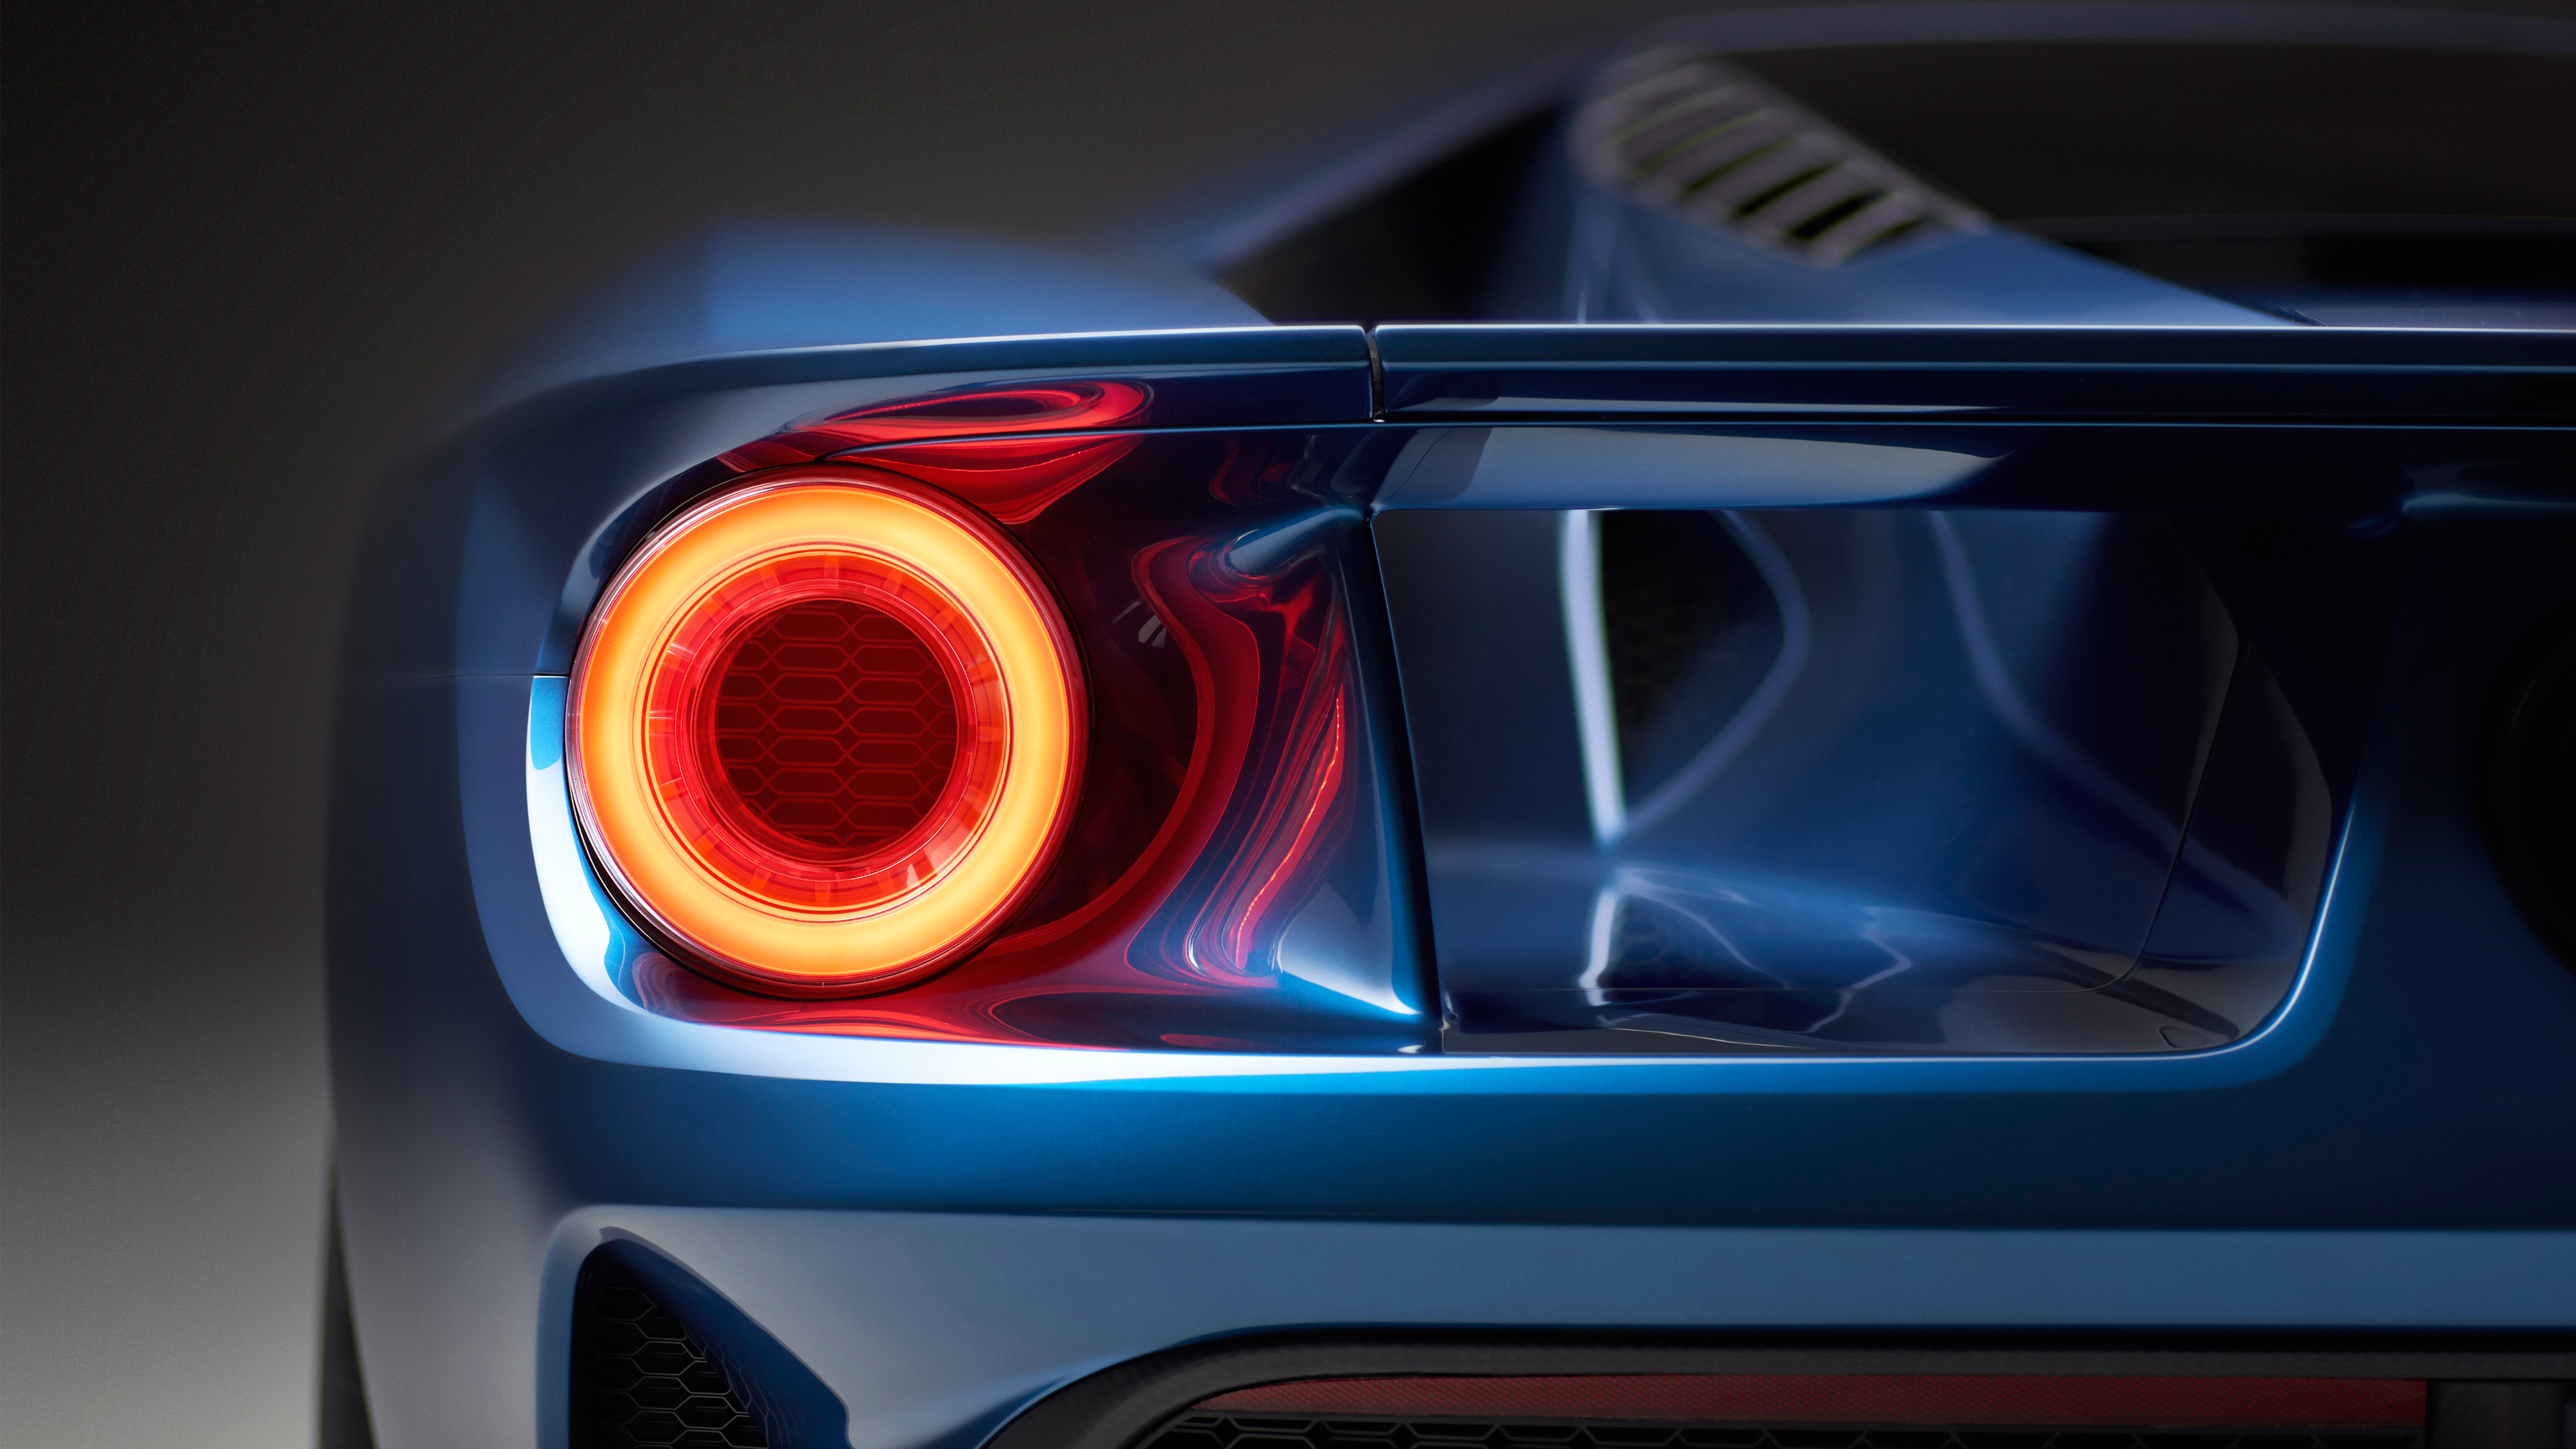 Forza Motorsport đã trở thành một trong những thương hiệu game đua xe hàng đầu trên thế giới. Với chất lượng đồ hoạ đỉnh cao và tính năng tuyệt vời, nó đưa bạn đến với thế giới của những chiếc xe siêu đẹp và tốc độ chóng mặt. Hãy xem hình ảnh liên quan đến Forza Motorsport và cảm nhận sự hoan lạc khi bạn lái chiếc xe mơ ước của mình.